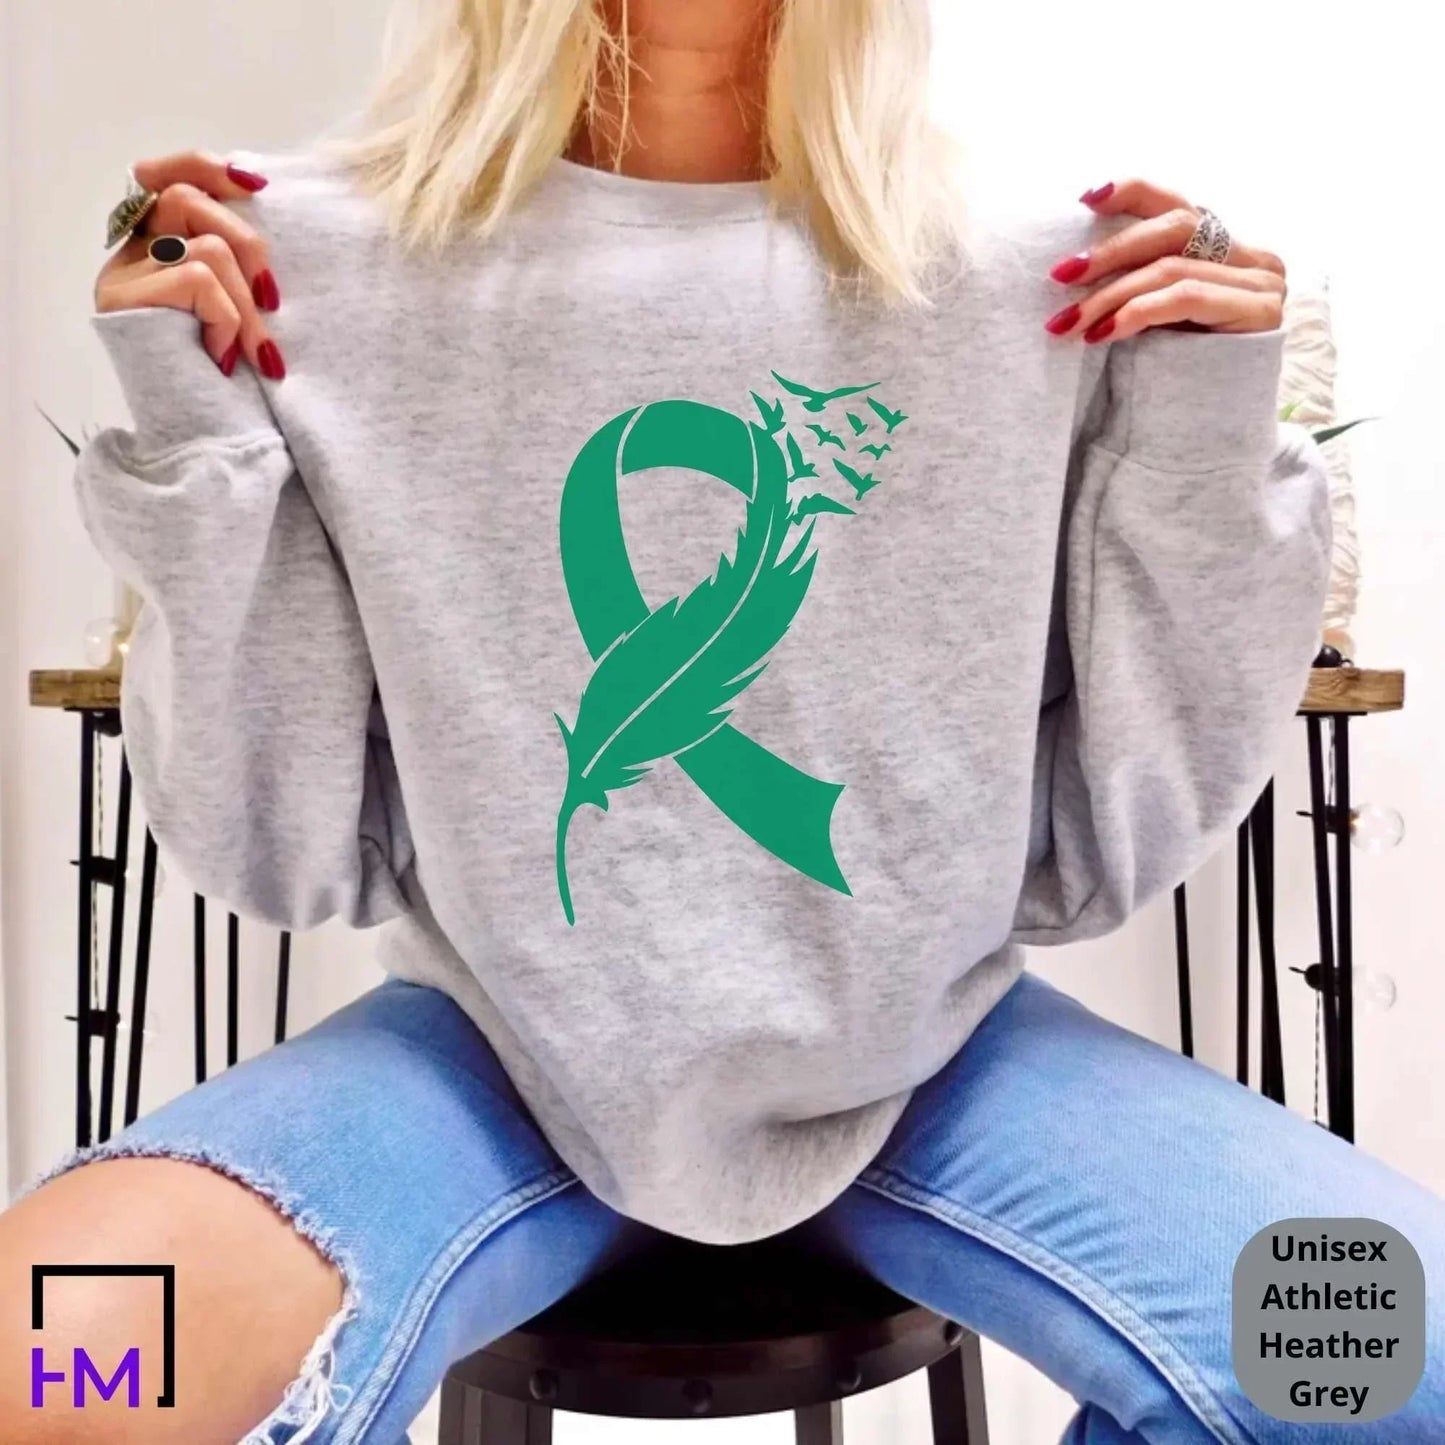 Liver Cancer Shirt, Liver Cancer Warrior Gift, Liver Cancer Green Ribbon Shirt, Liver Cancer Awareness Shirt, Cancer Fighter Gifts, Support